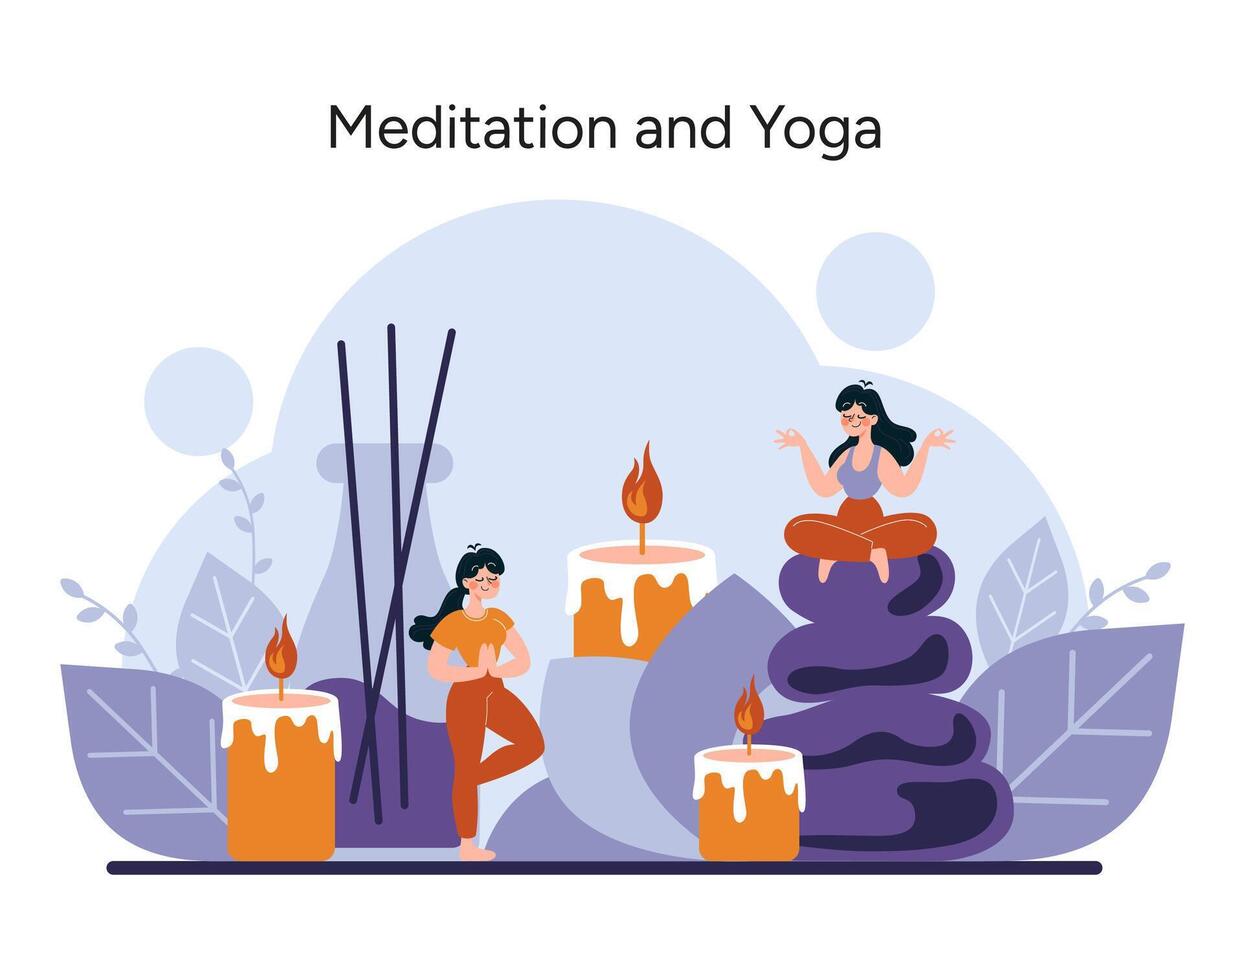 heiter zahlen trainieren Yoga und Meditation, suchen innere Frieden inmitten beruhigend Kerzen und Natur Elemente vektor